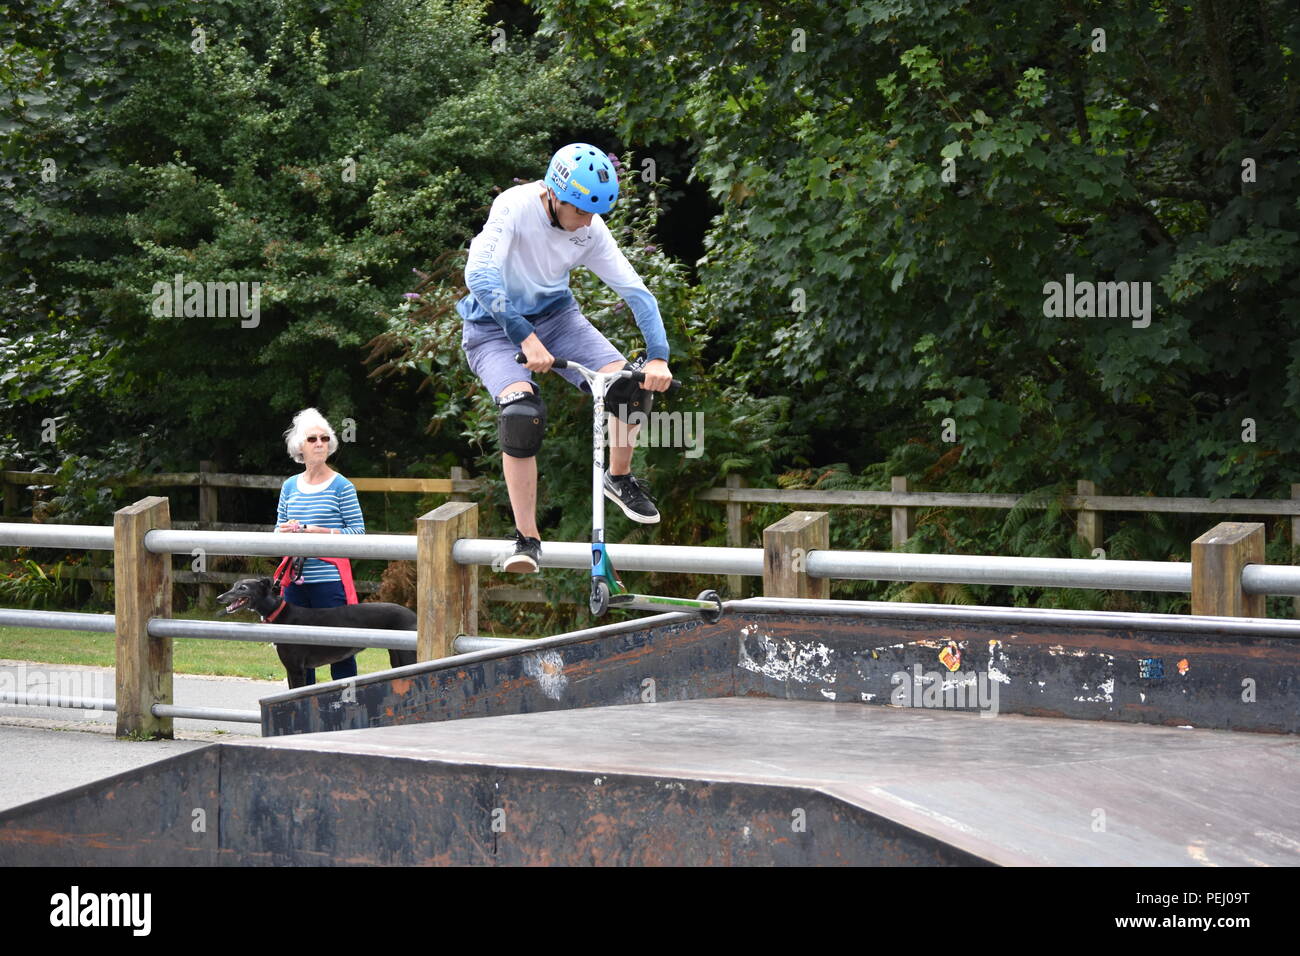 Skate Jam Skate park Wettbewerb Stockfoto